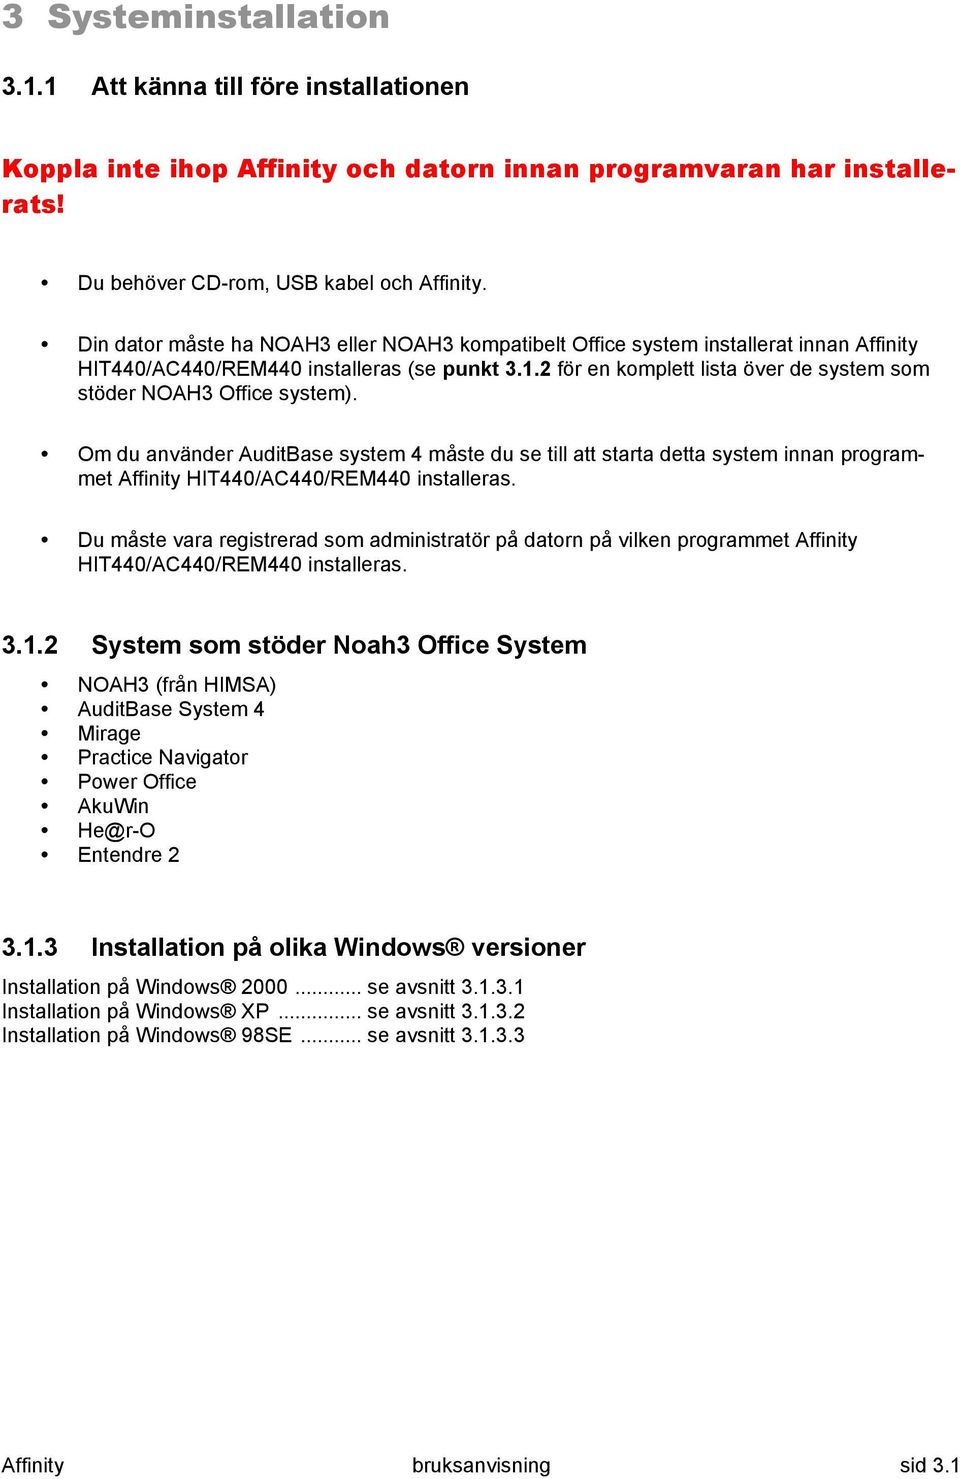 2 för en komplett lista över de system som stöder NOAH3 Office system).